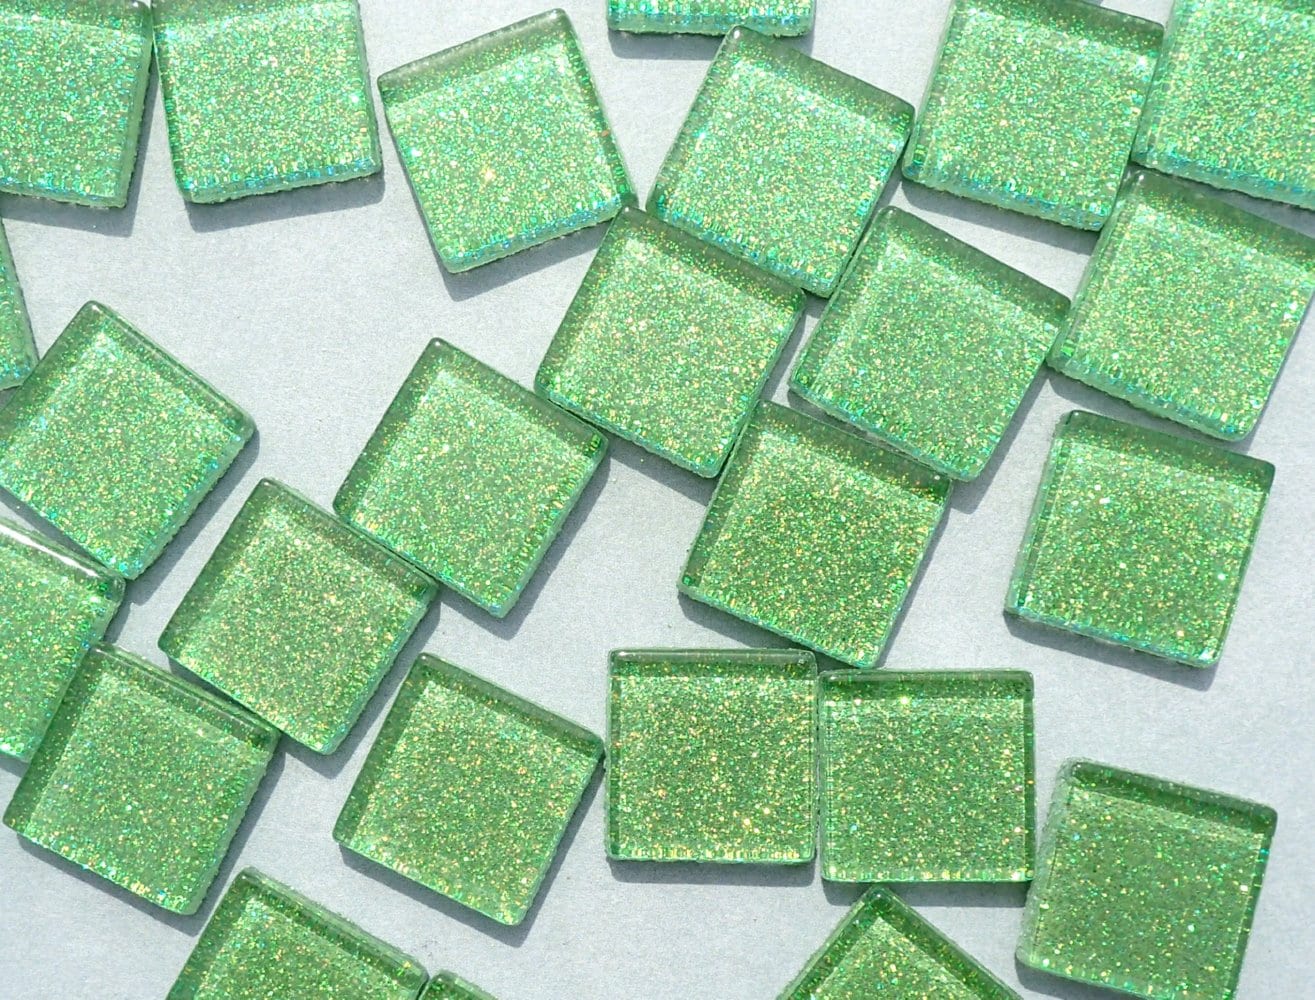 Bright Candy Green Glitter Tiles - 20mm Mosaic Tiles - 25 Metallic Glass Tiles